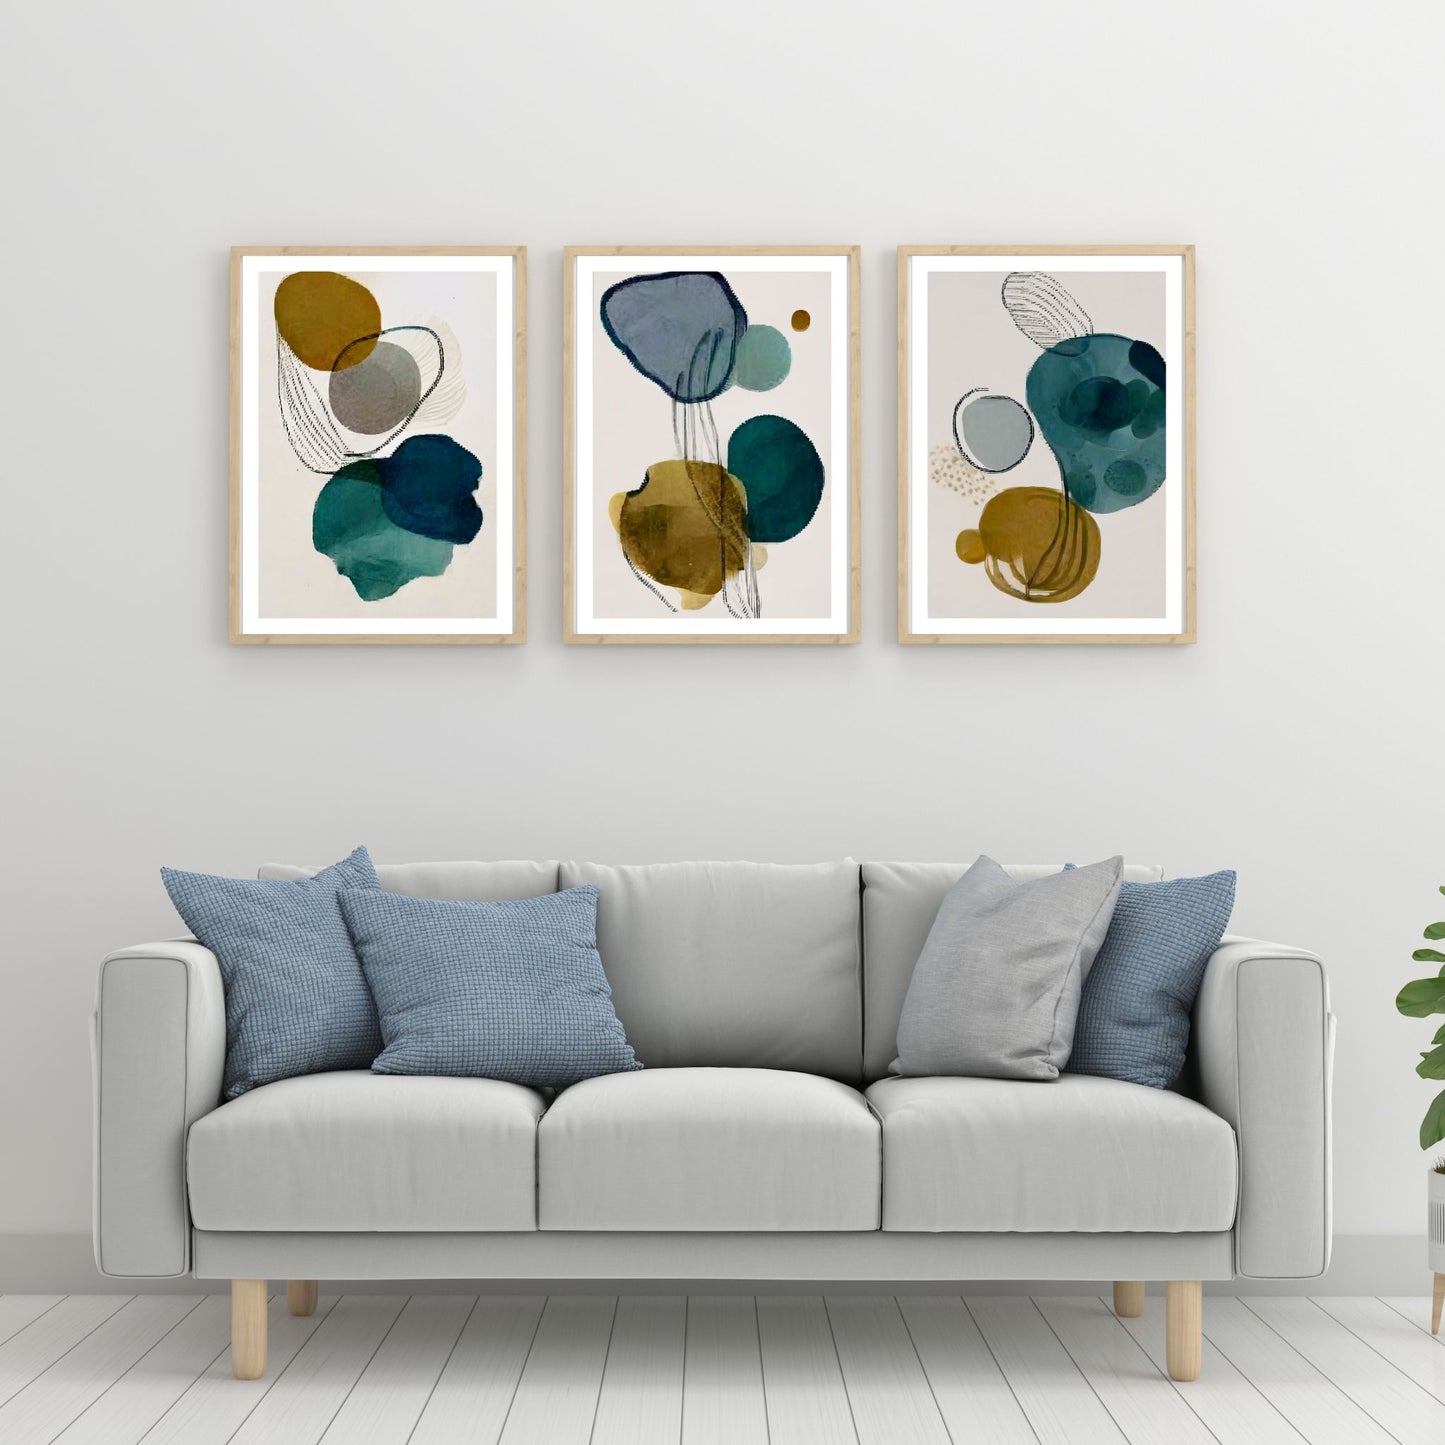 Serie med 3 kunst plakater med abstrakt mønster. Fargenyanser i svart, blå, grønn, brun og grå. Bildet viser plakaten i en ramme av eik, hengende på en vegg.